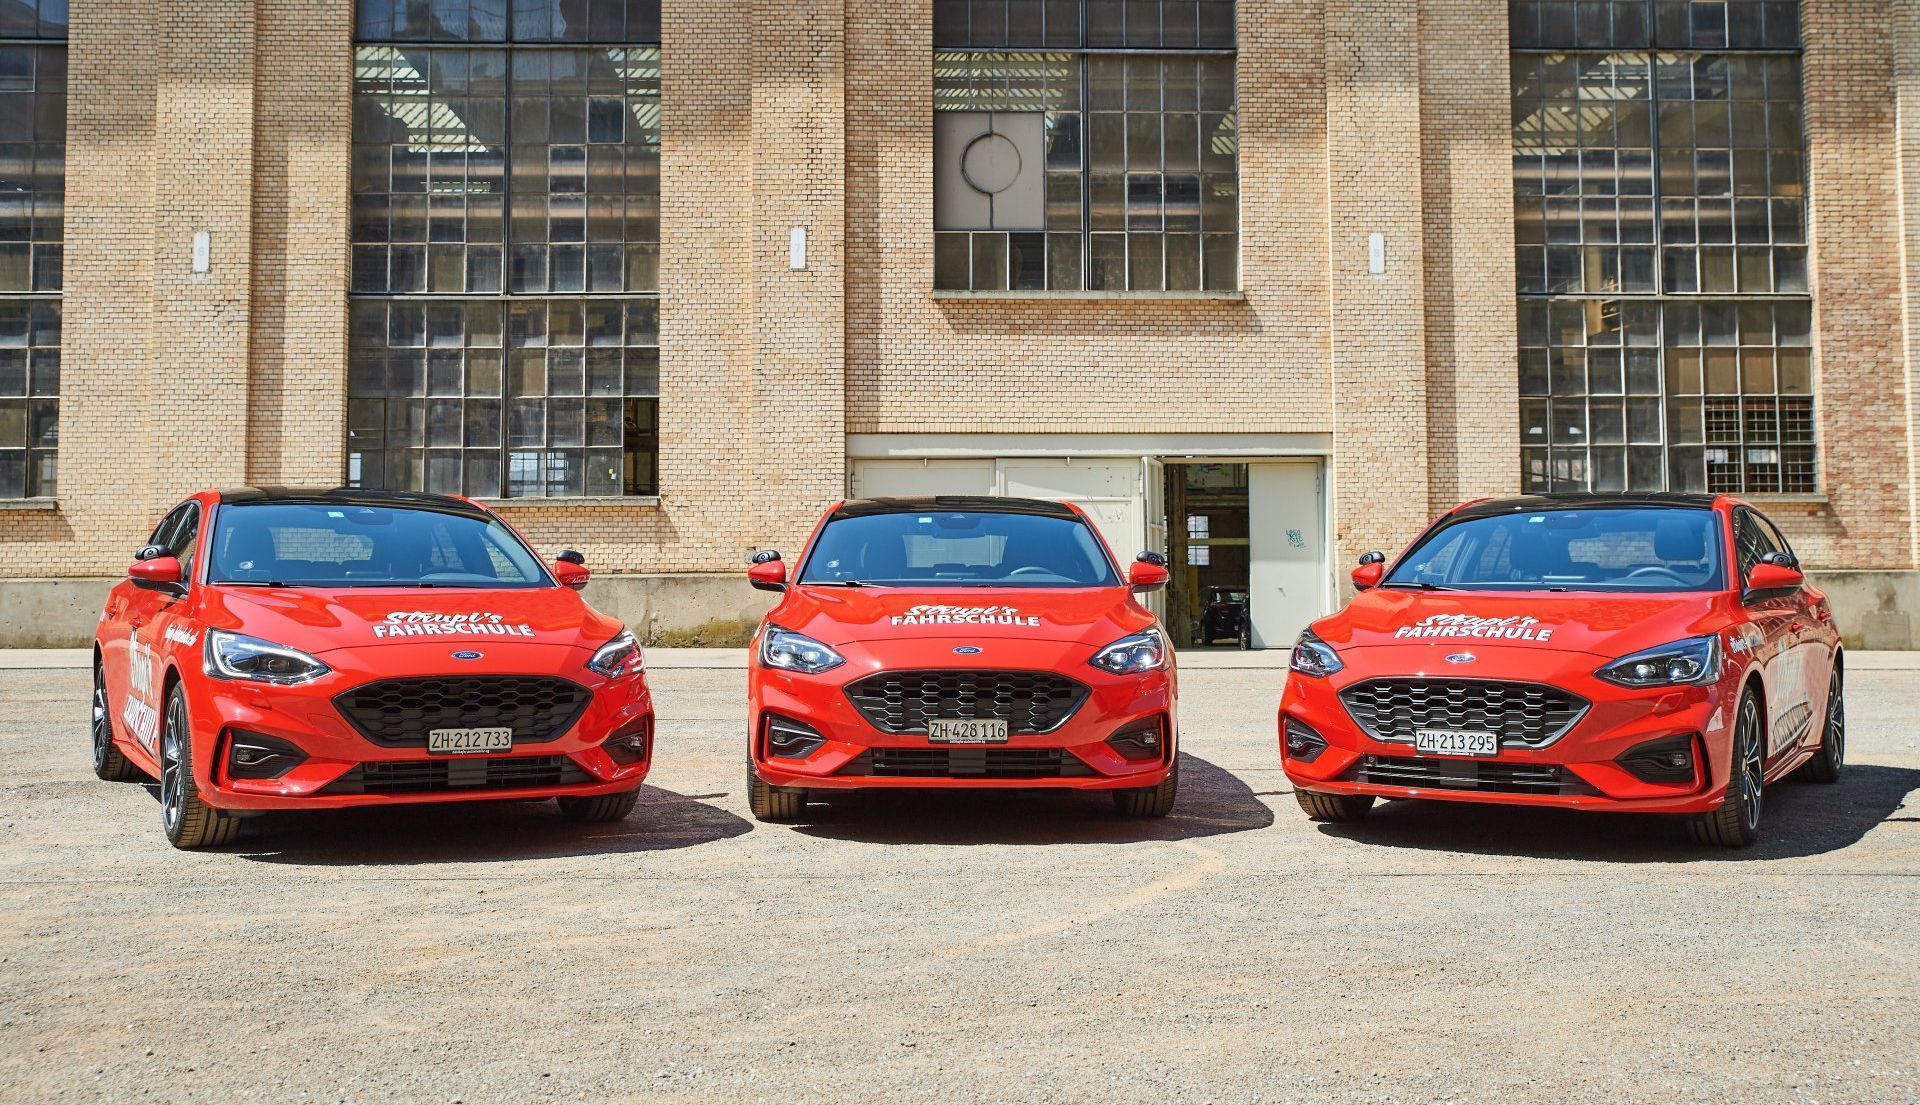 Drei rote Ford Focus-Wagen parken vor einem Backsteingebäude.